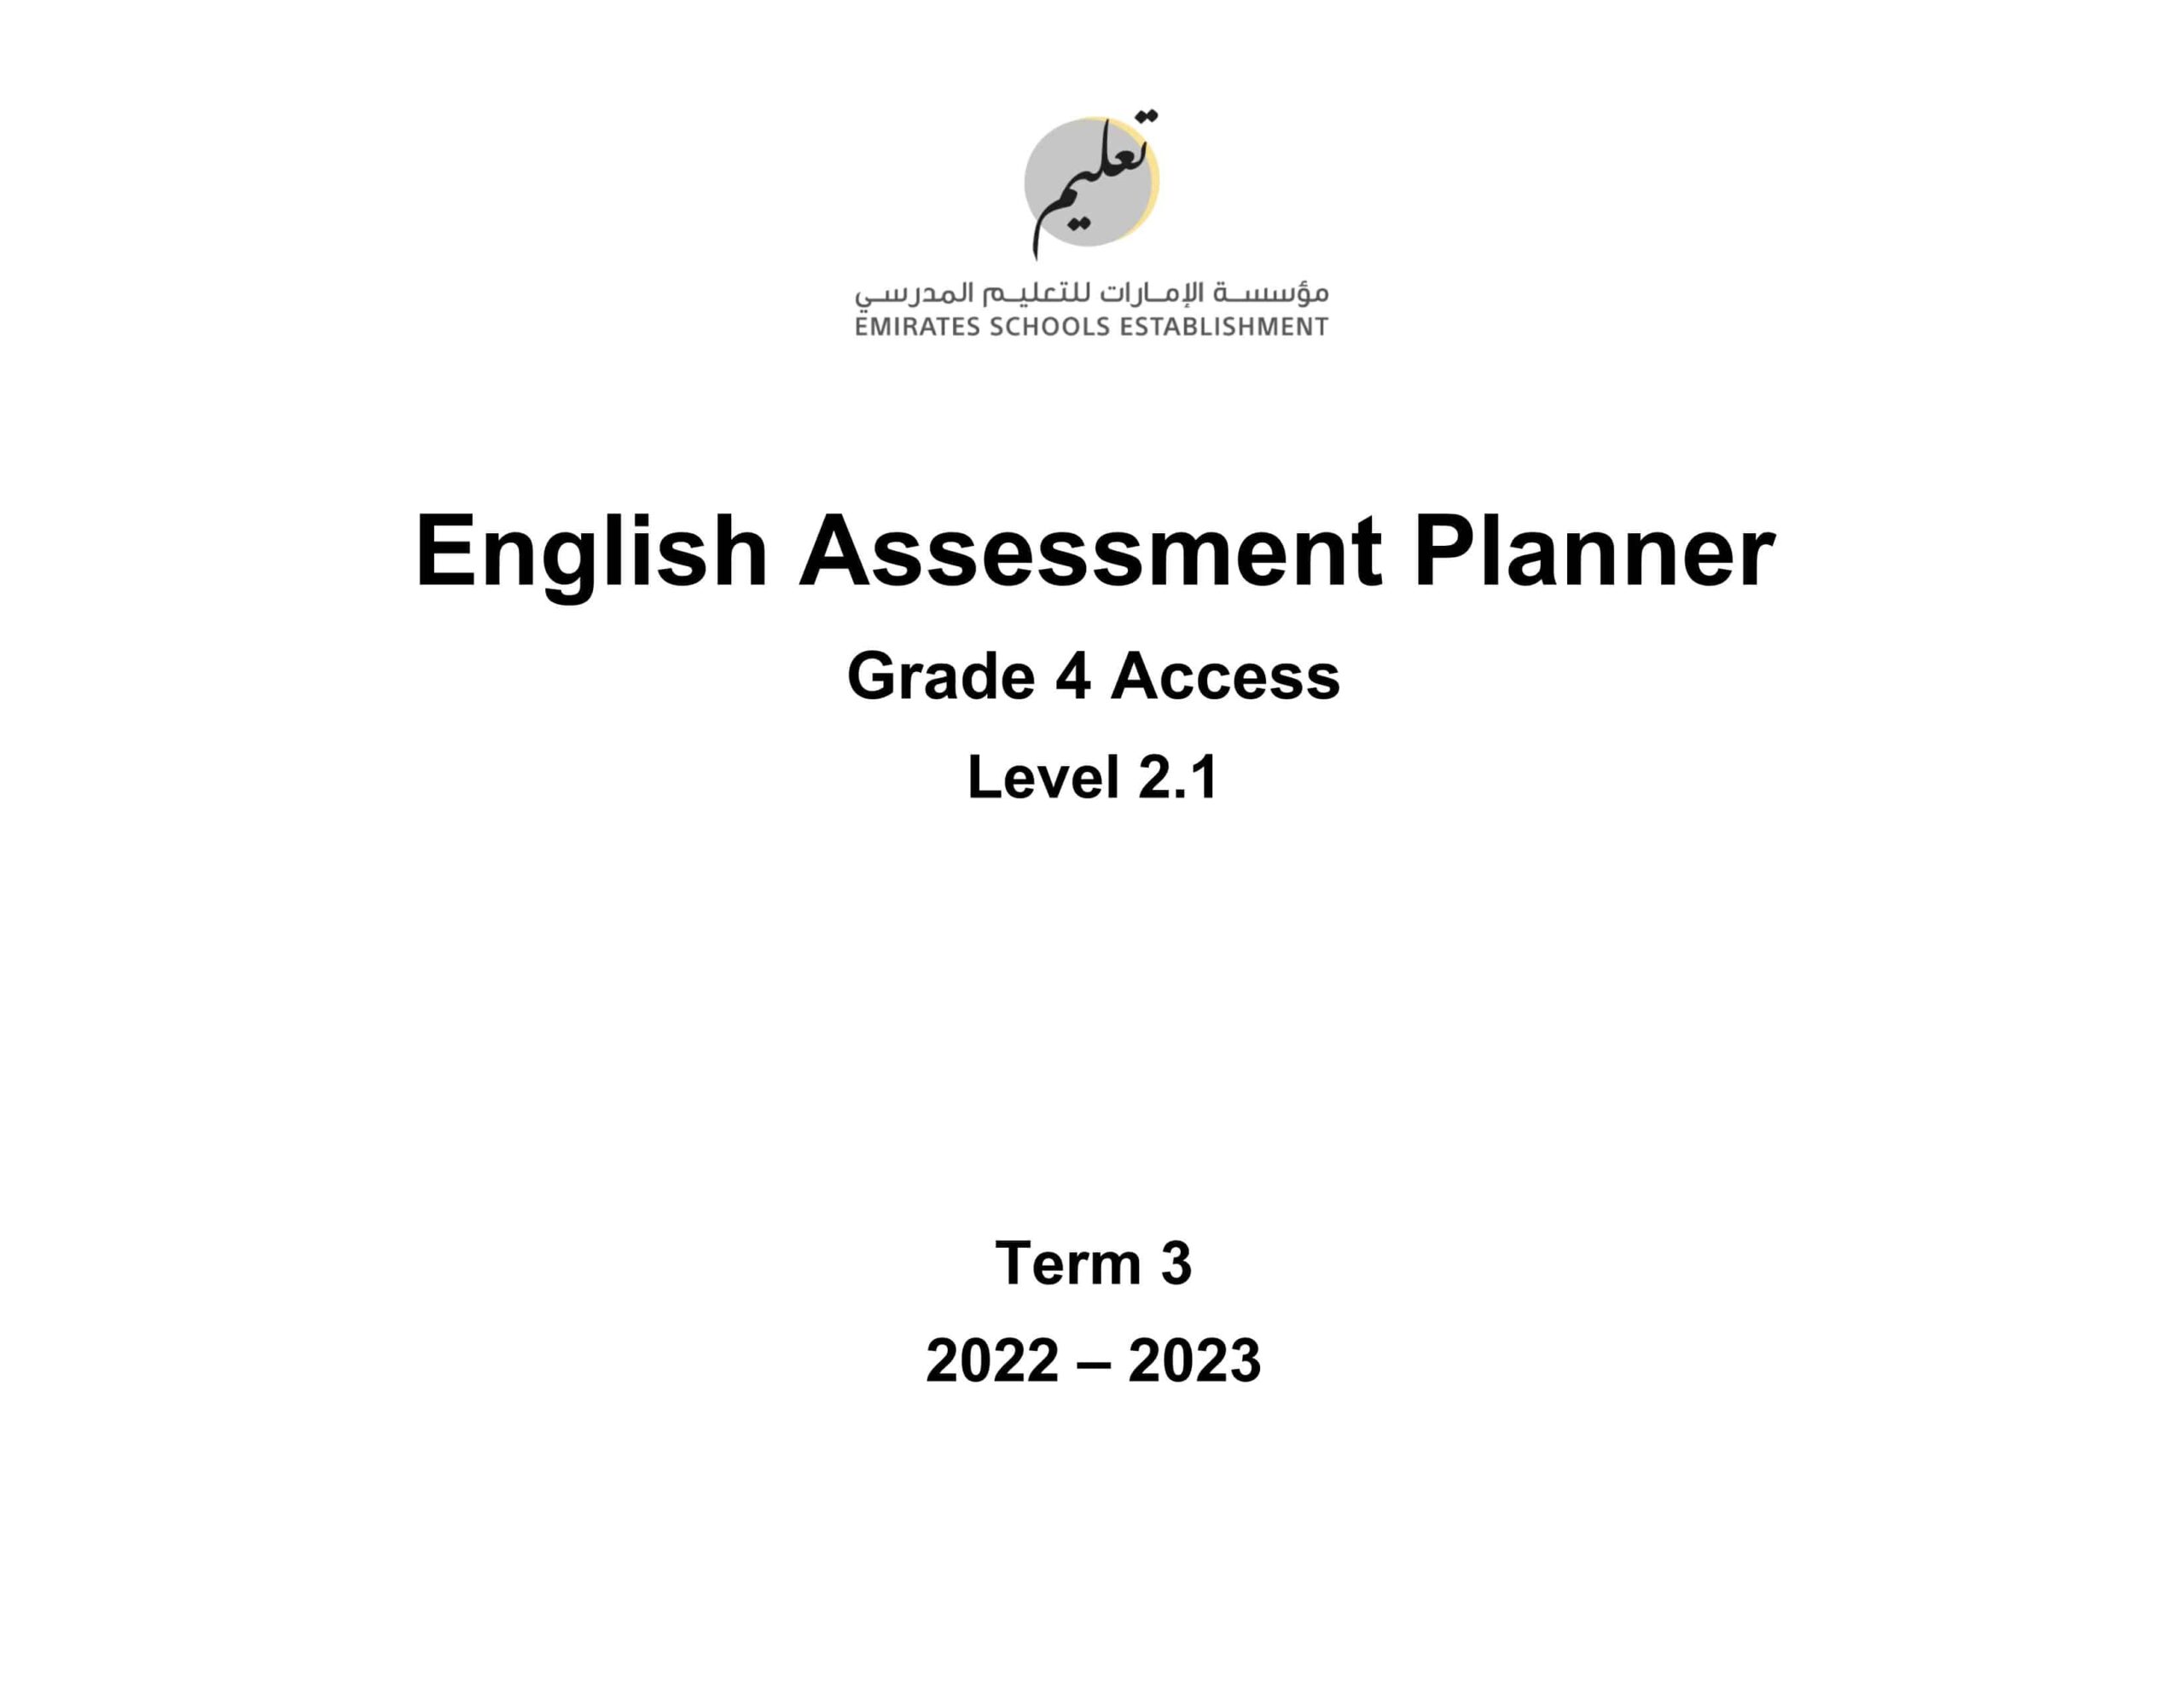 Assessment Planner اللغة الإنجليزية الصف الرابع Access الفصل الدراسي الثالث 2022-2023